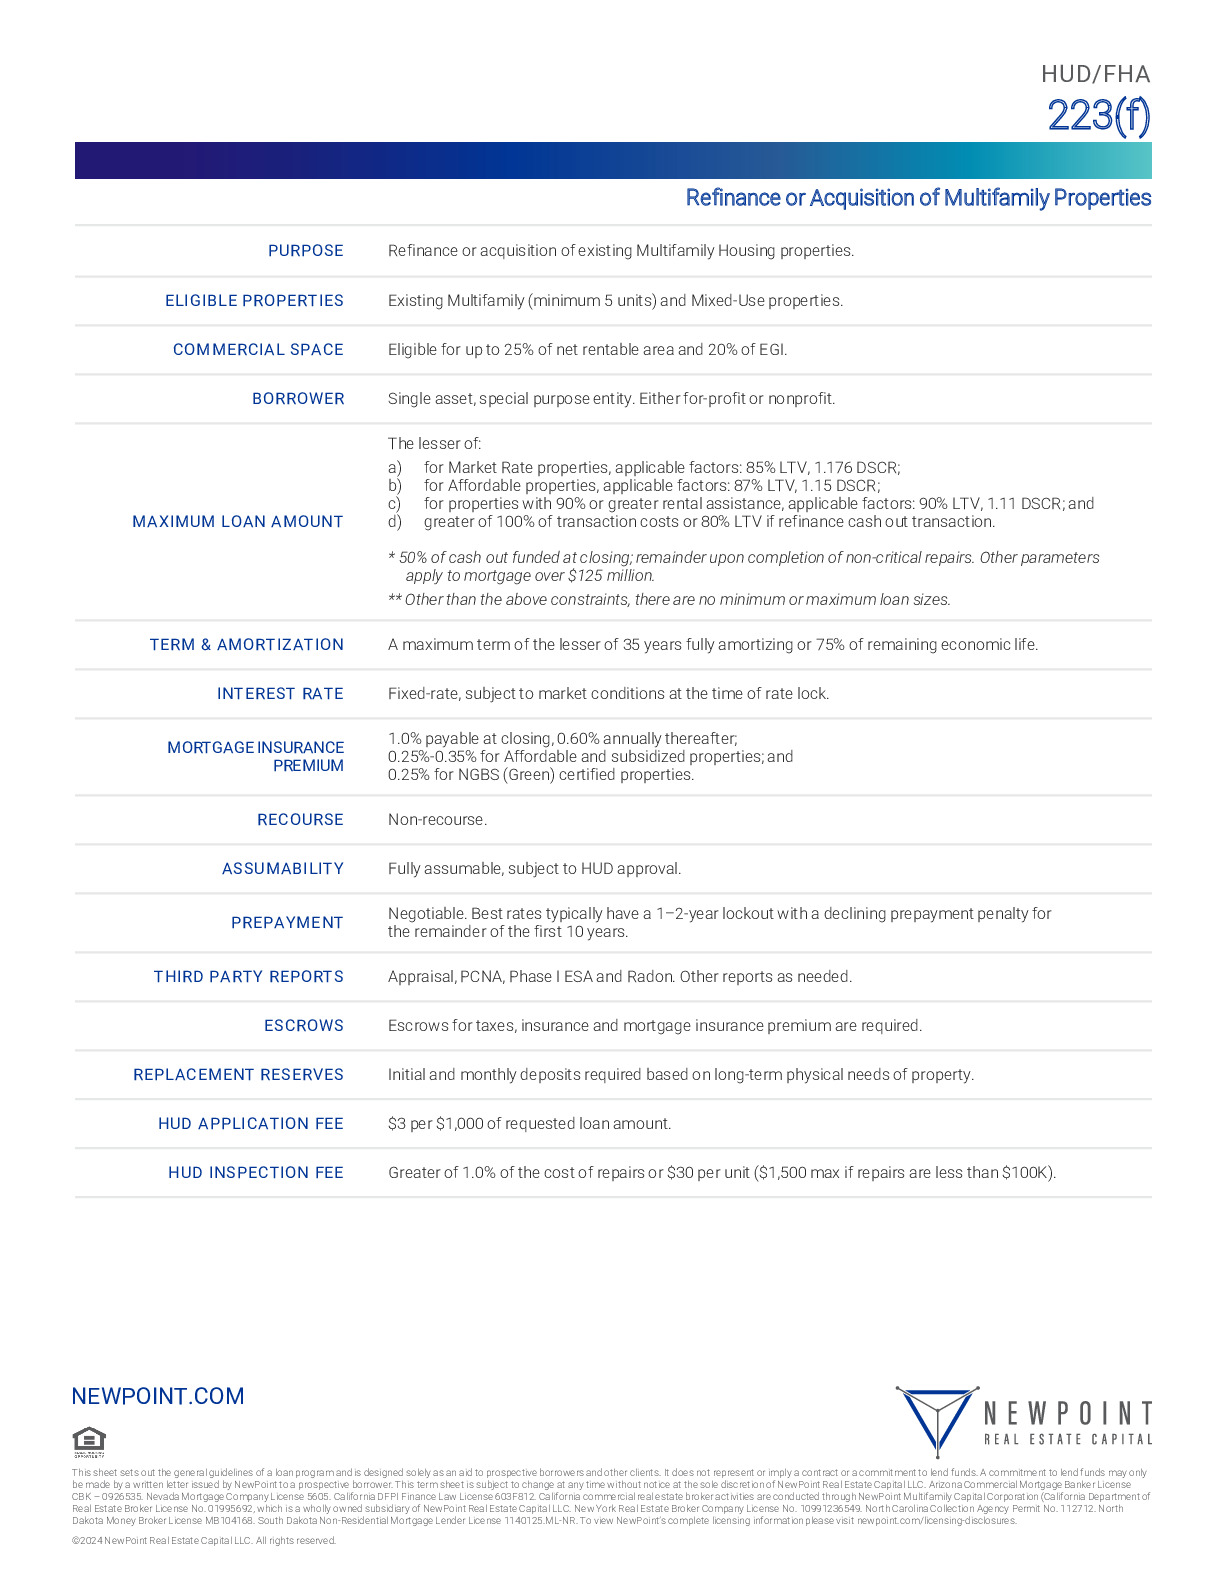 NewPoint_HUD-FHA_223(f).pdf